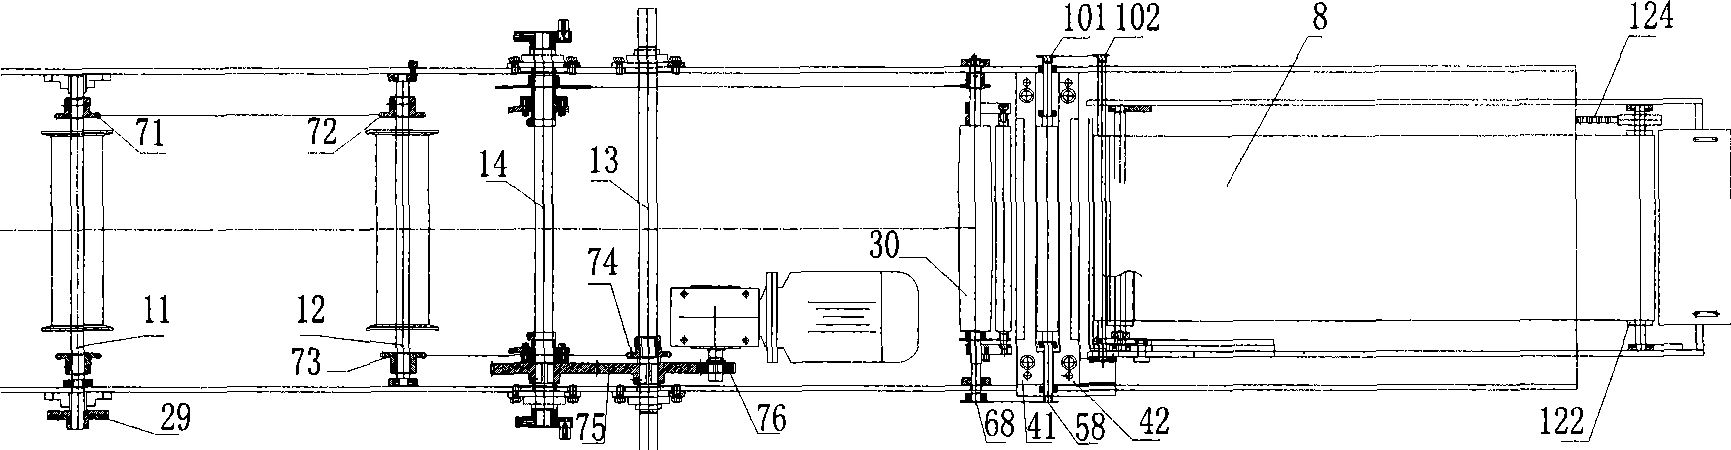 Flat cut type plate-casting machine